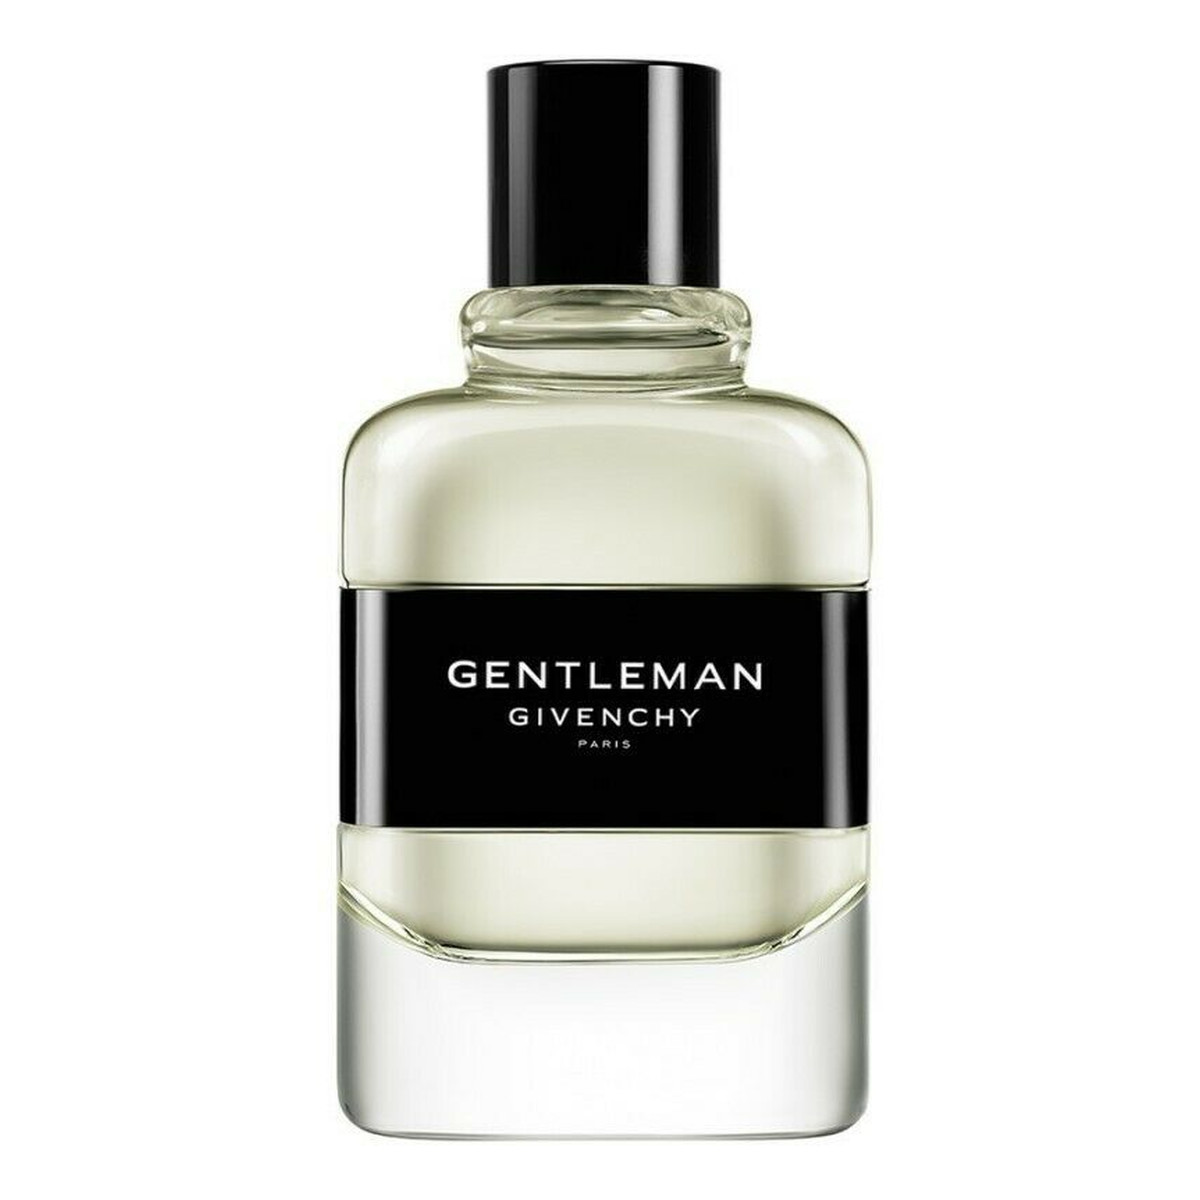 Givenchy Gentleman woda toaletowa 50ml